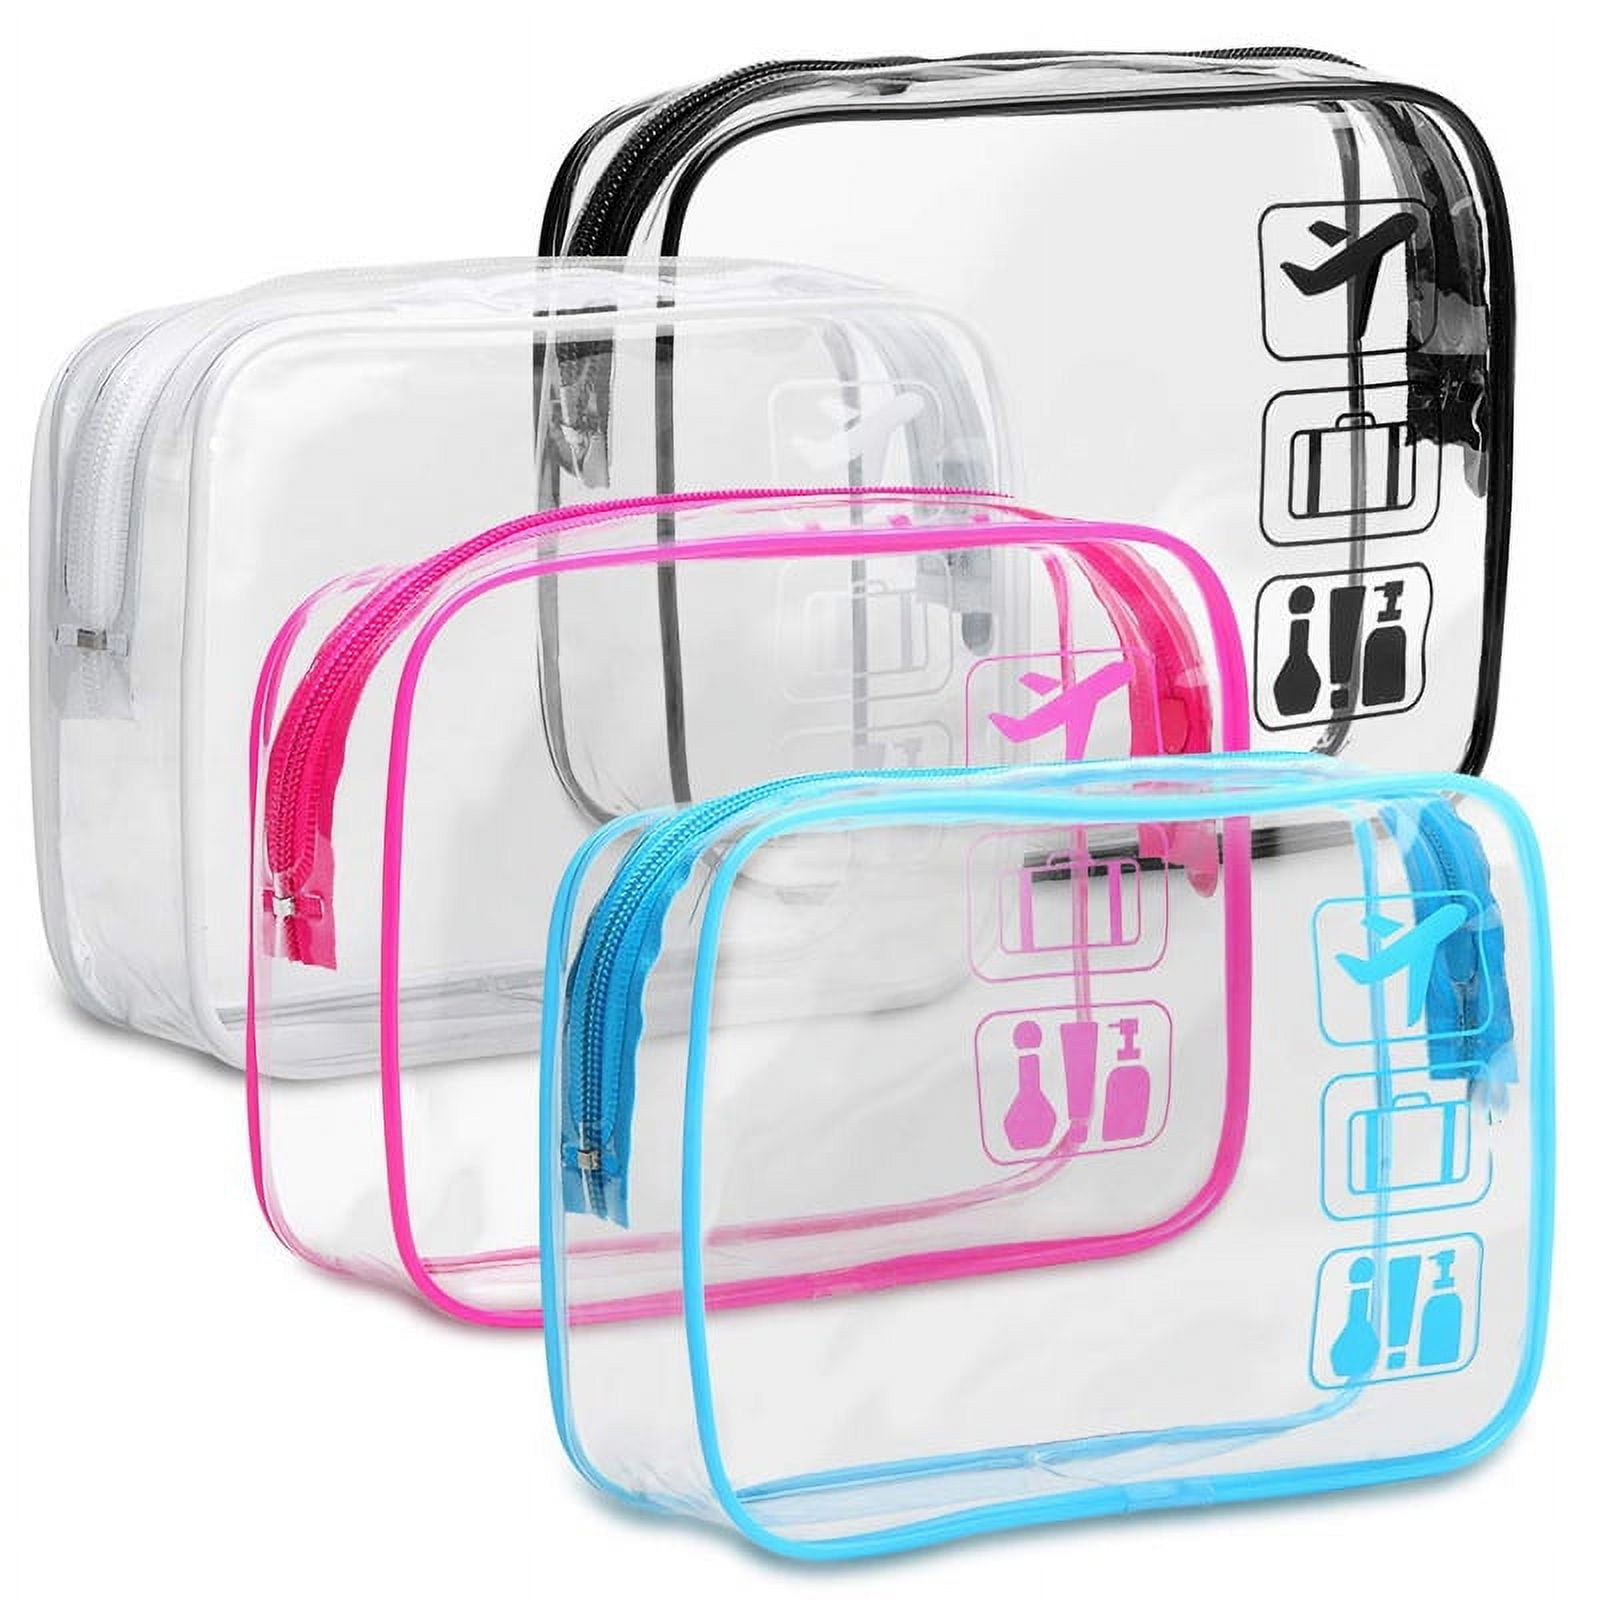 TOM BIHN 3D Organizer Cube, Clear, 3-1-1 Toiletry Bag for TSA, 1L